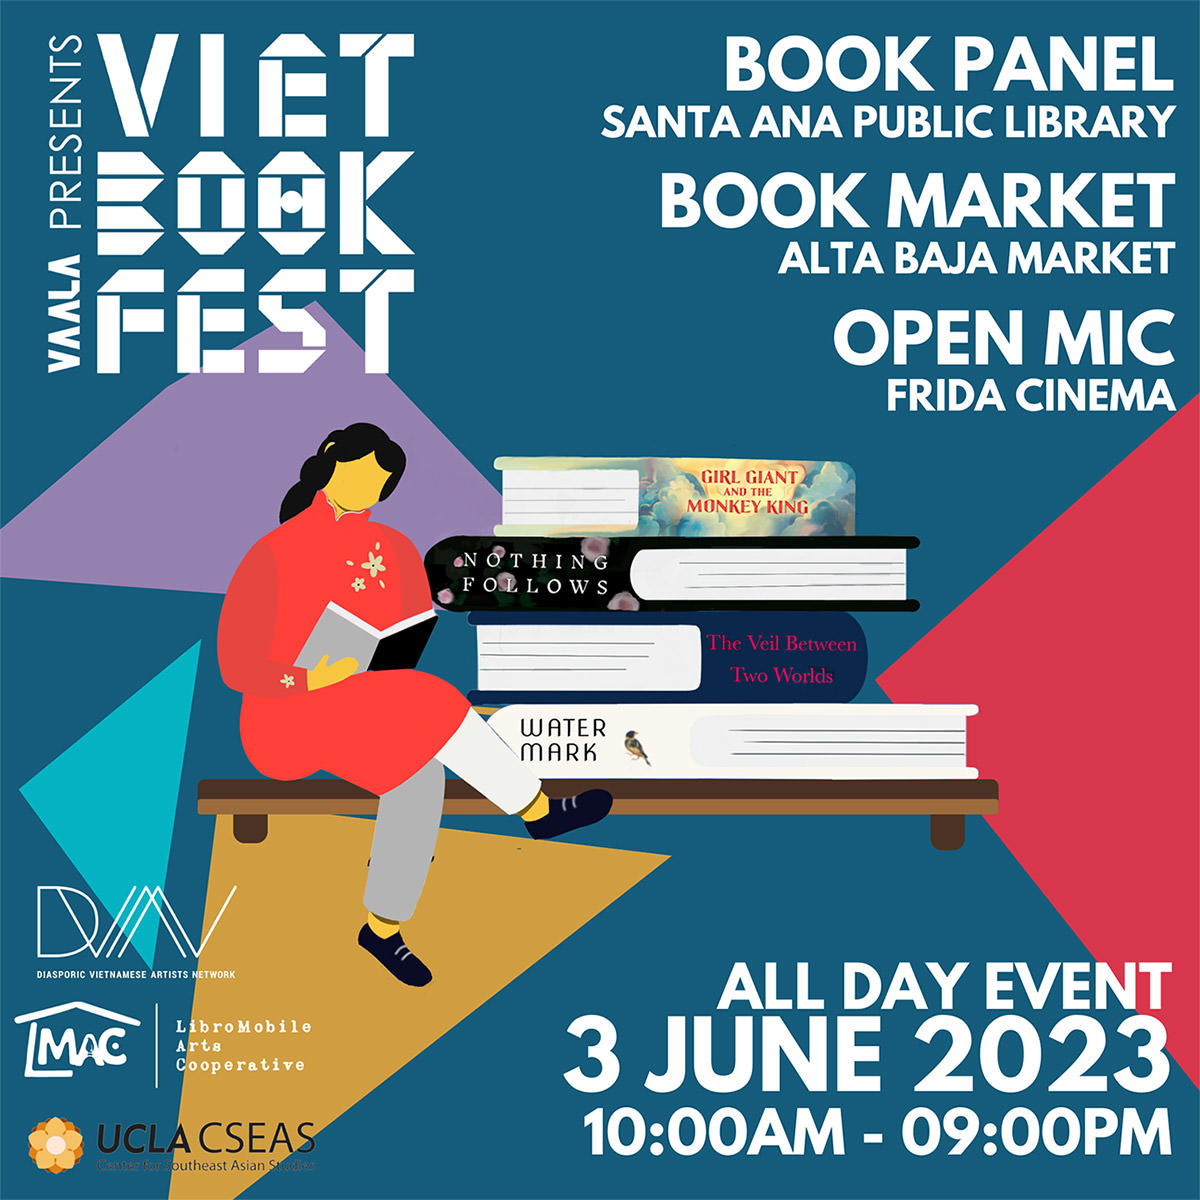 Viet Book Fest Instagram graphic